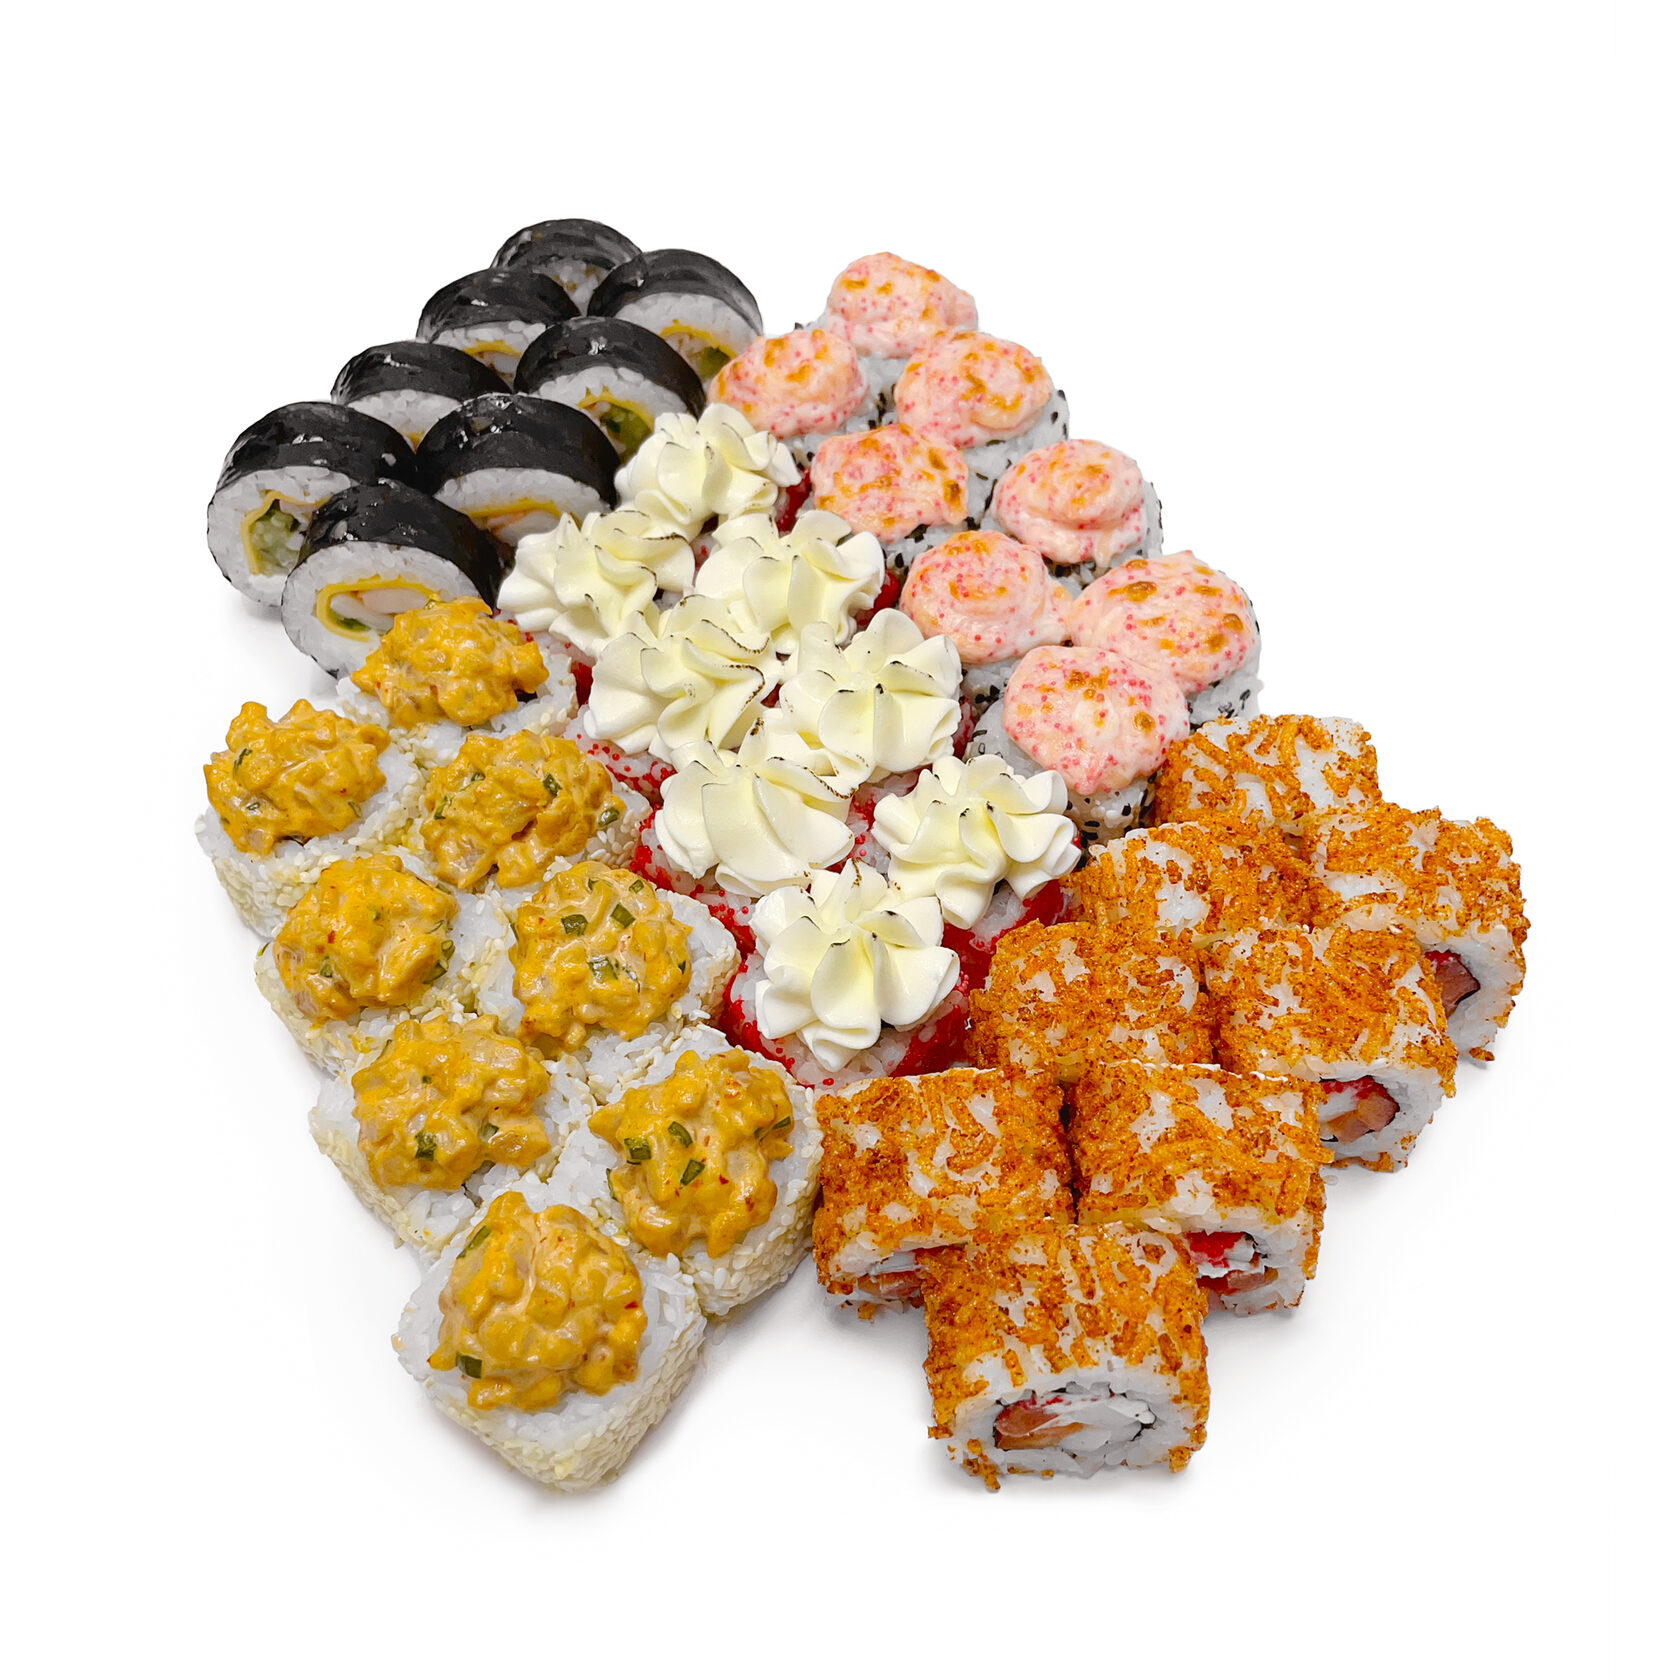 Заказать суши в клину с доставкой барракуда фото 71